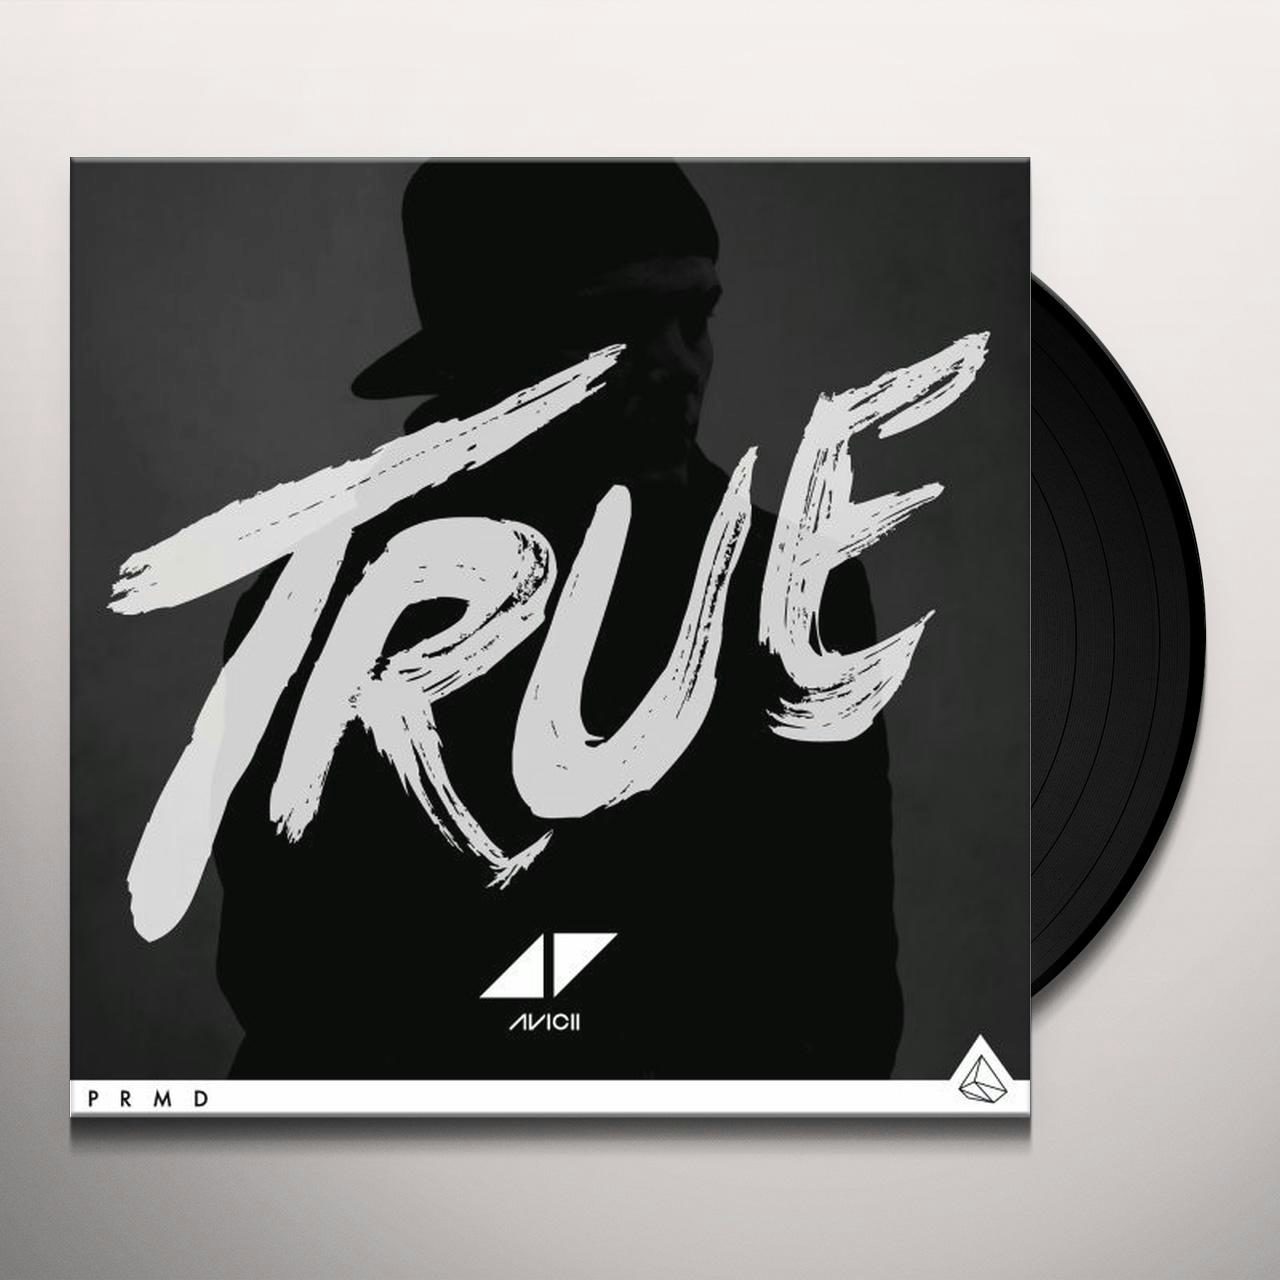 True Vinyl Record - Avicii